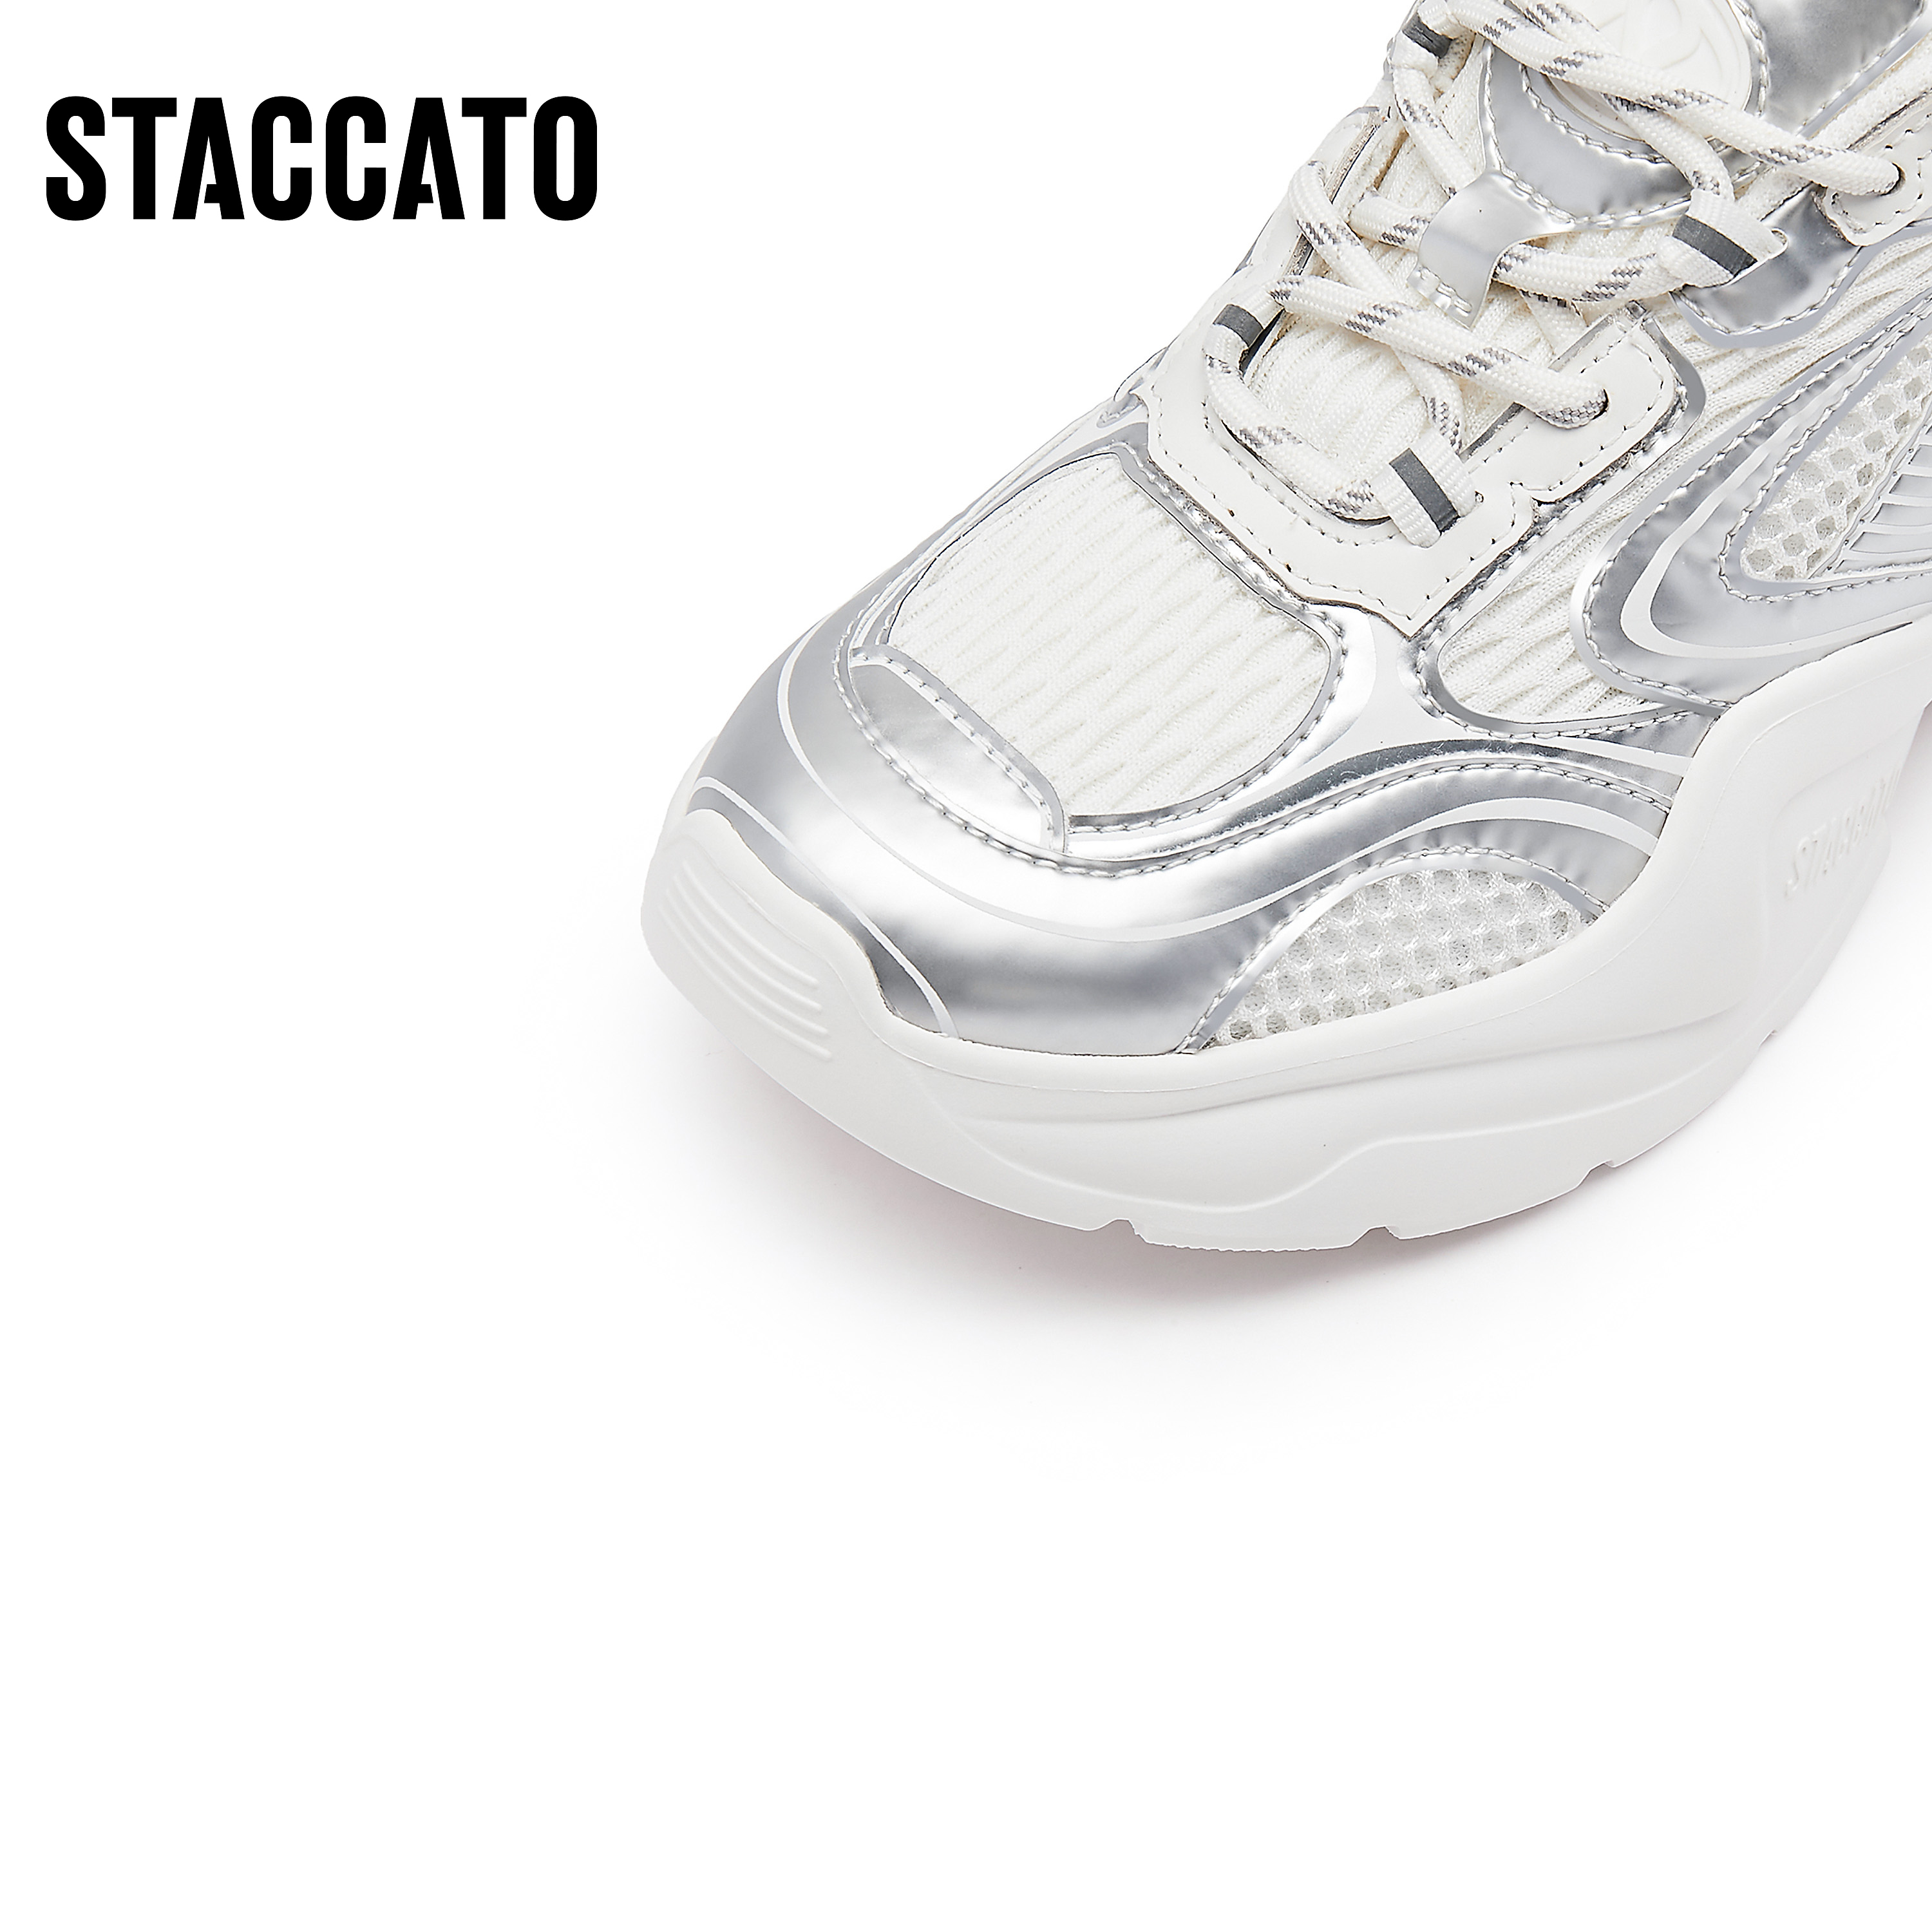 思加图新款时尚老爹鞋厚底增高透气运动休闲鞋ECE68CM3C - 图3